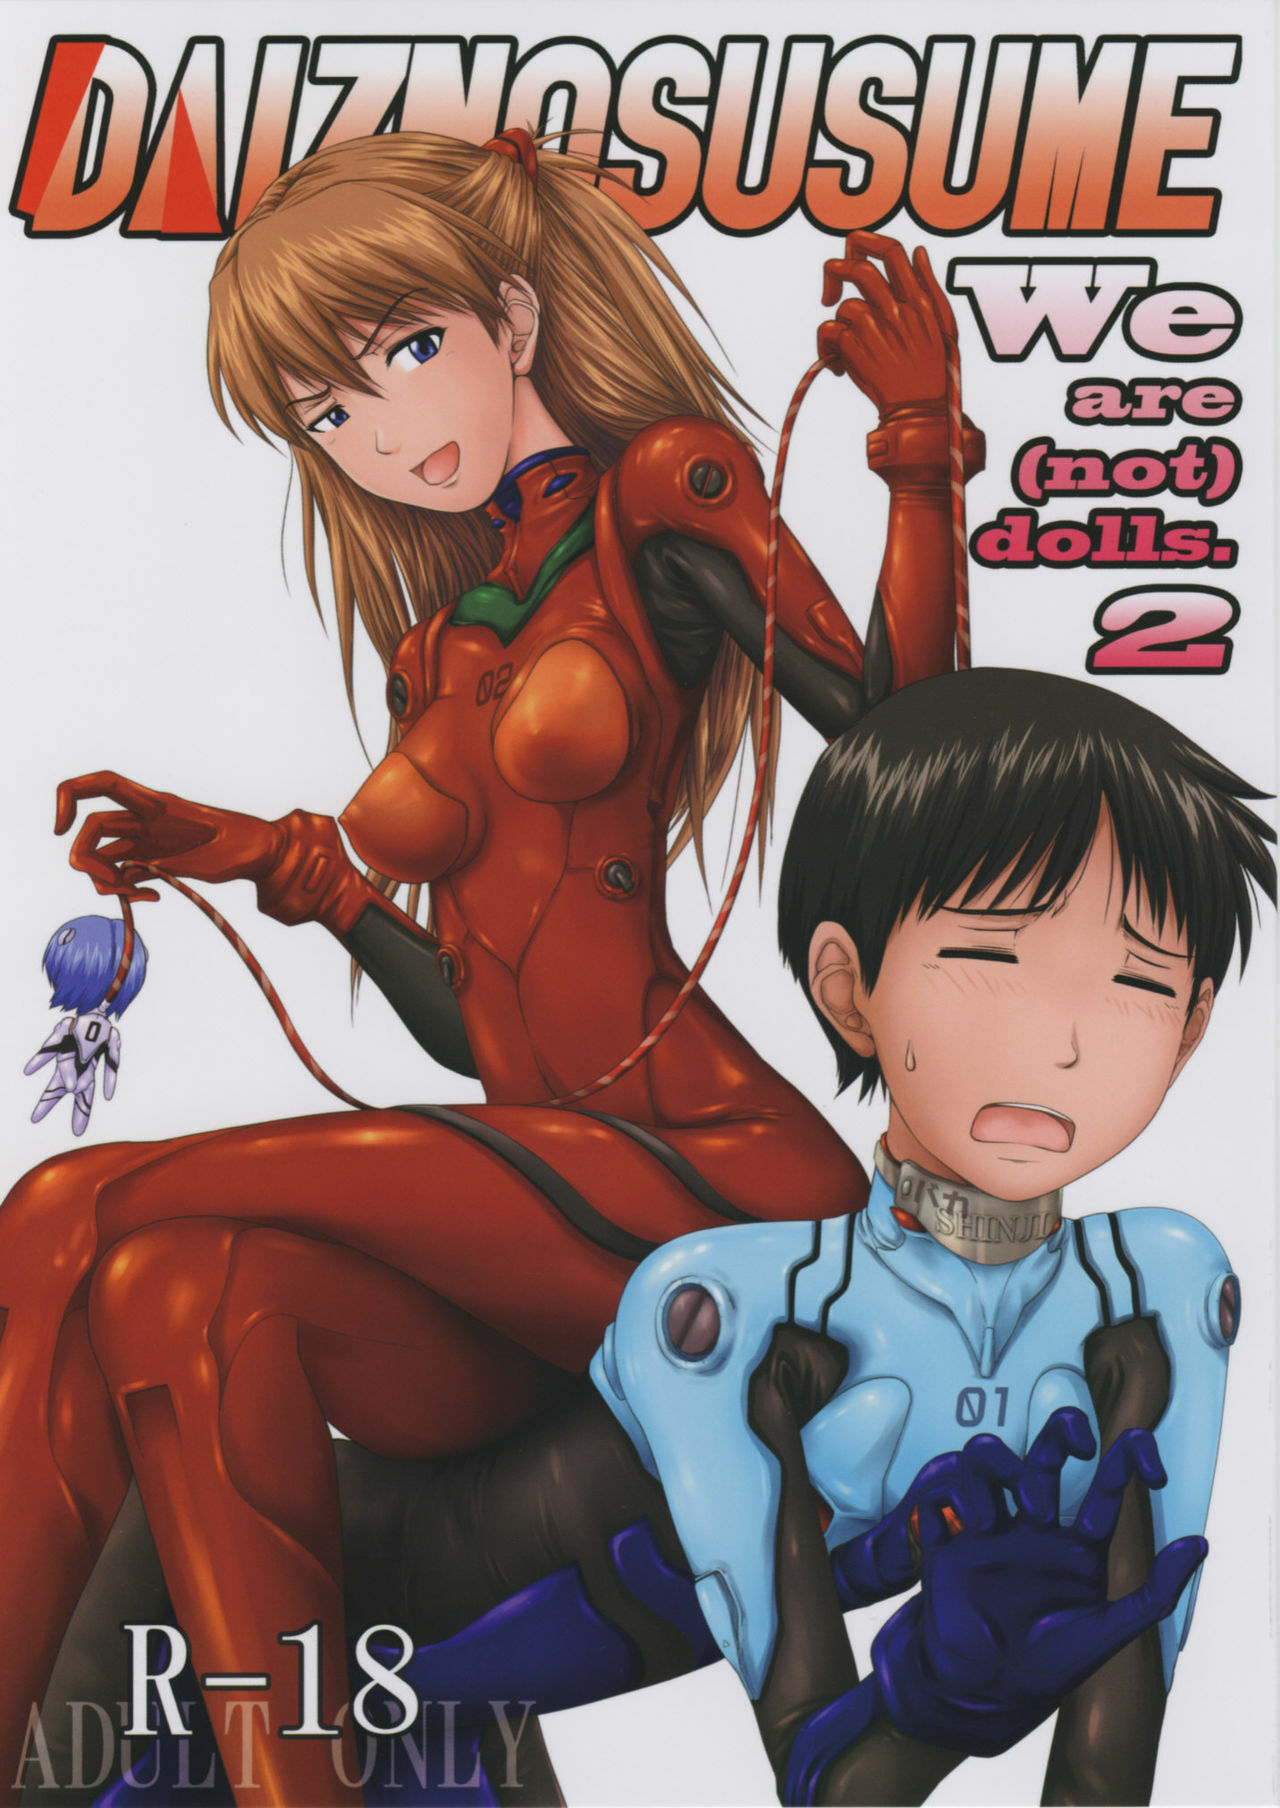 (C77) [Daiznosusume (Toyama Teiji, Saitou Kusuo)] We are (not) dolls. 2 (Rebuild of Evangelion) page 1 full